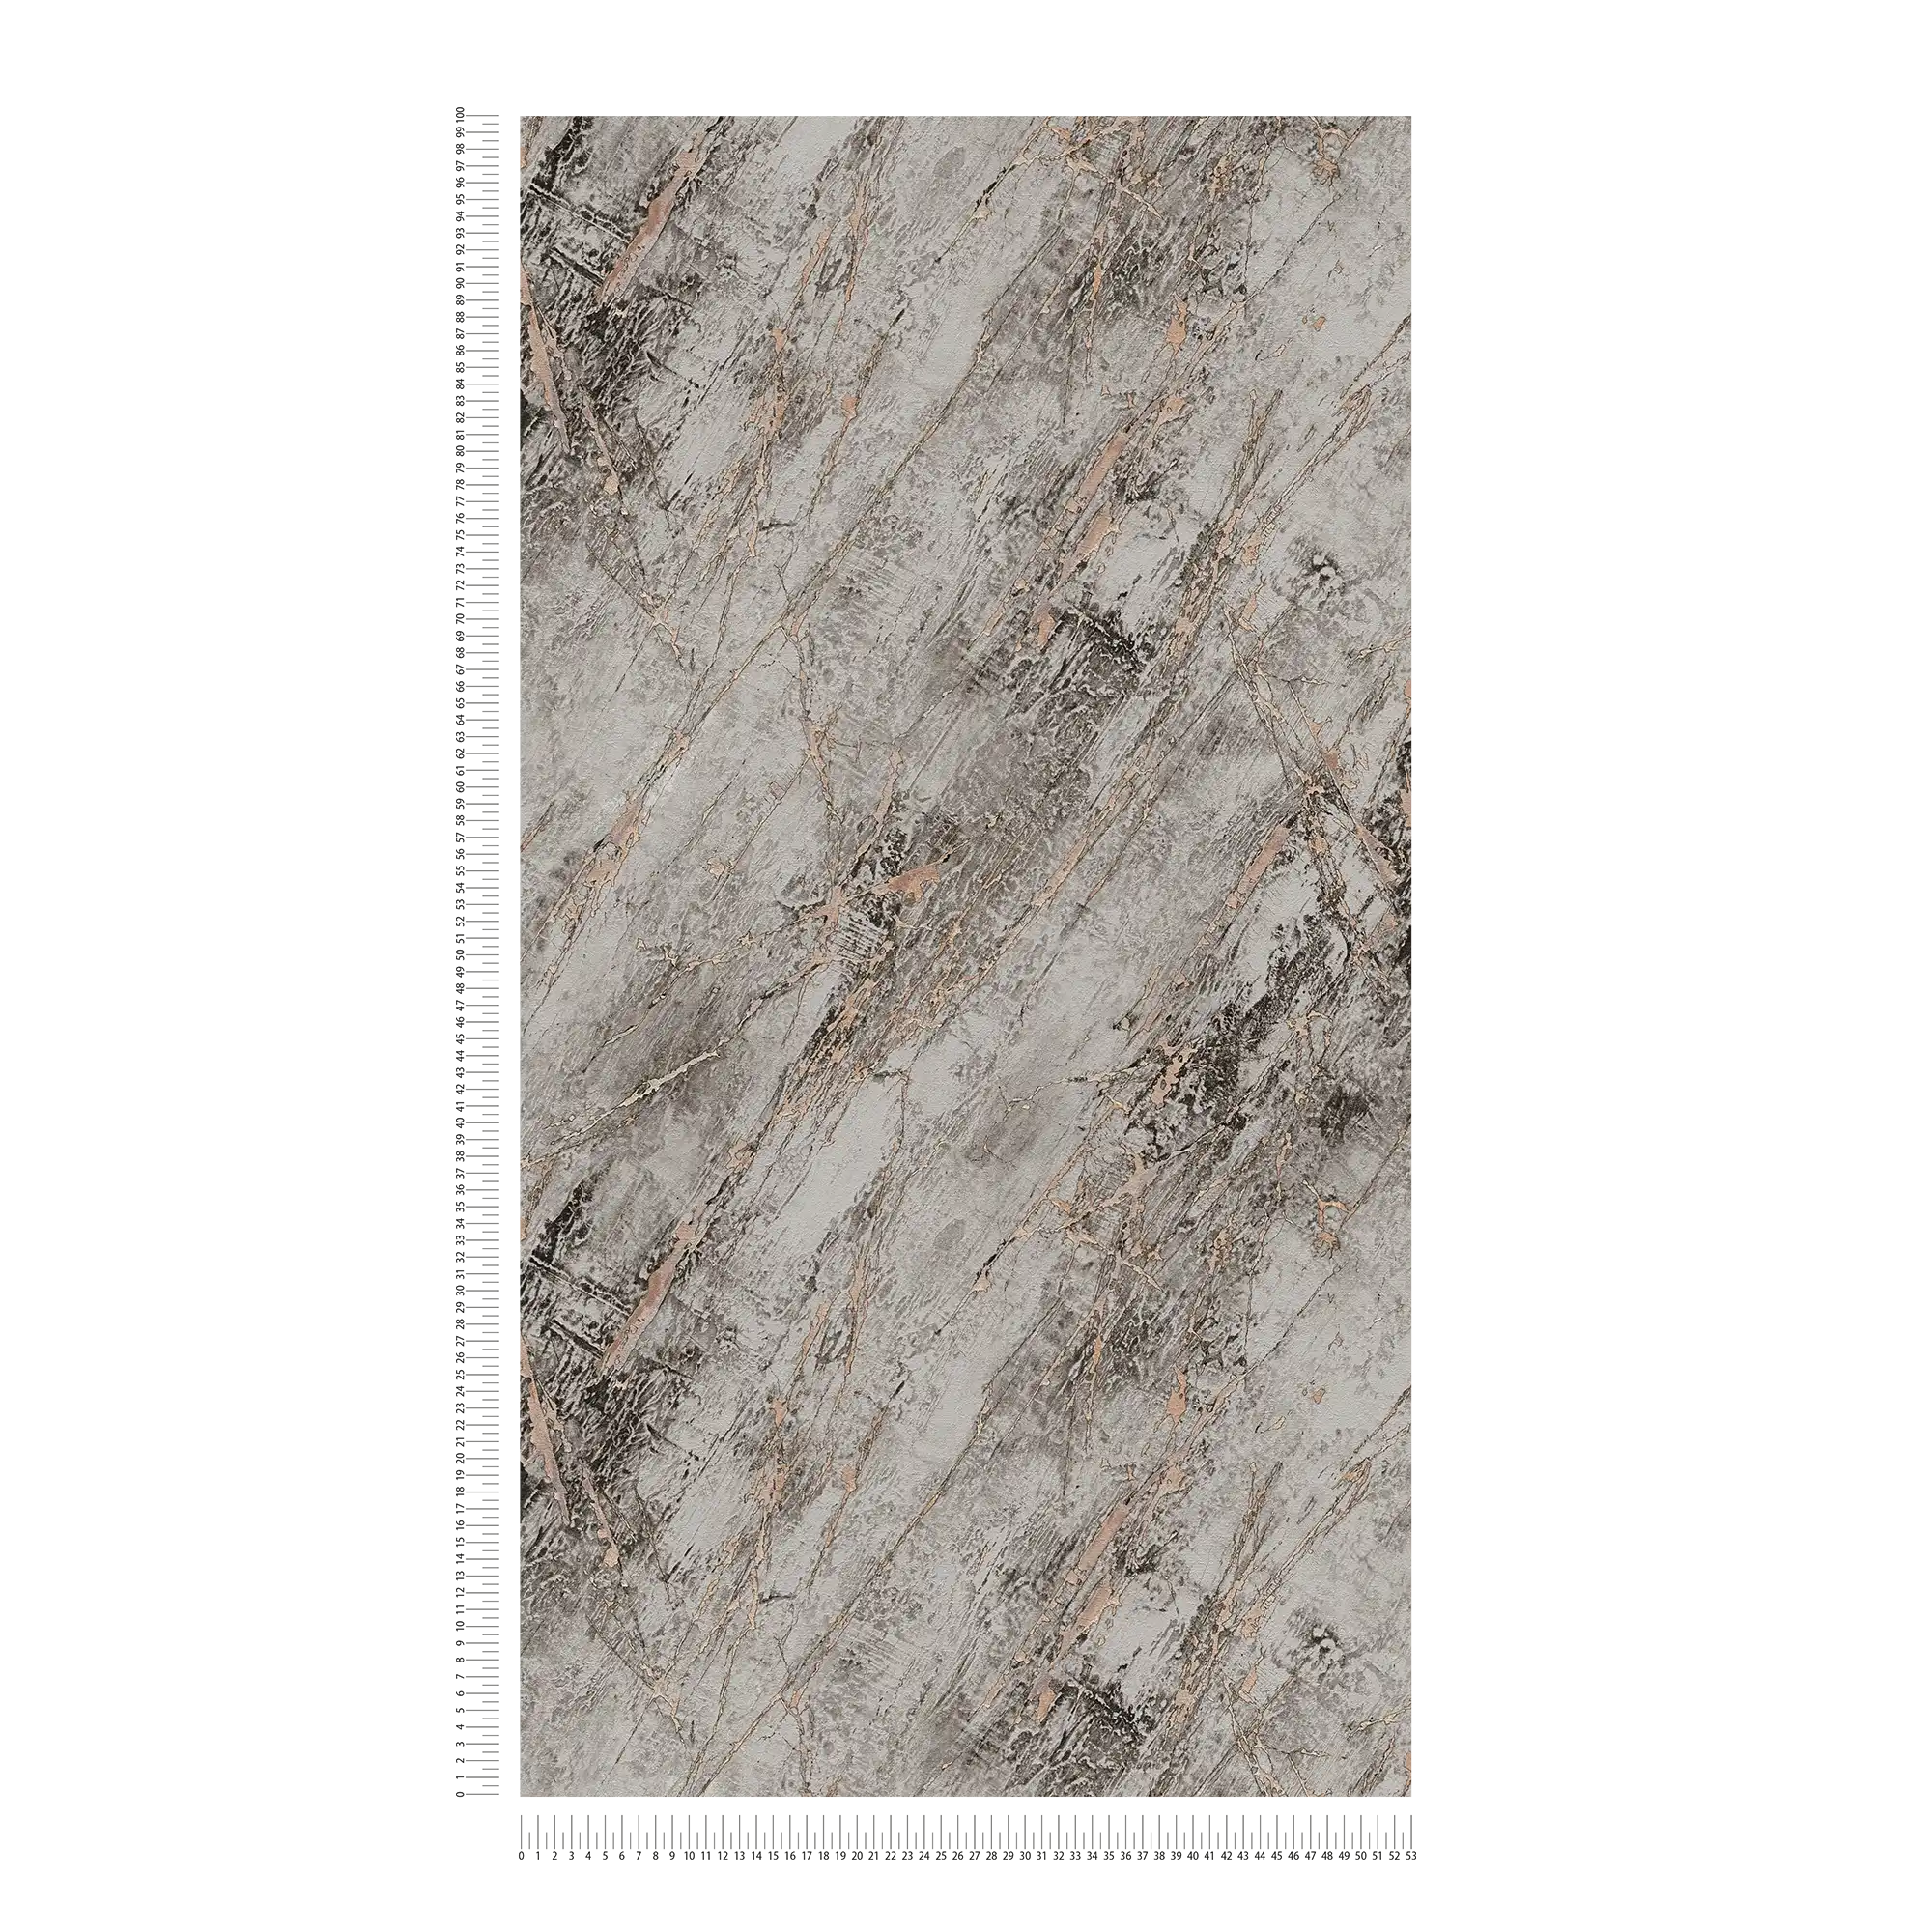             Grey marble wallpaper with metallic effect - grey, beige
        